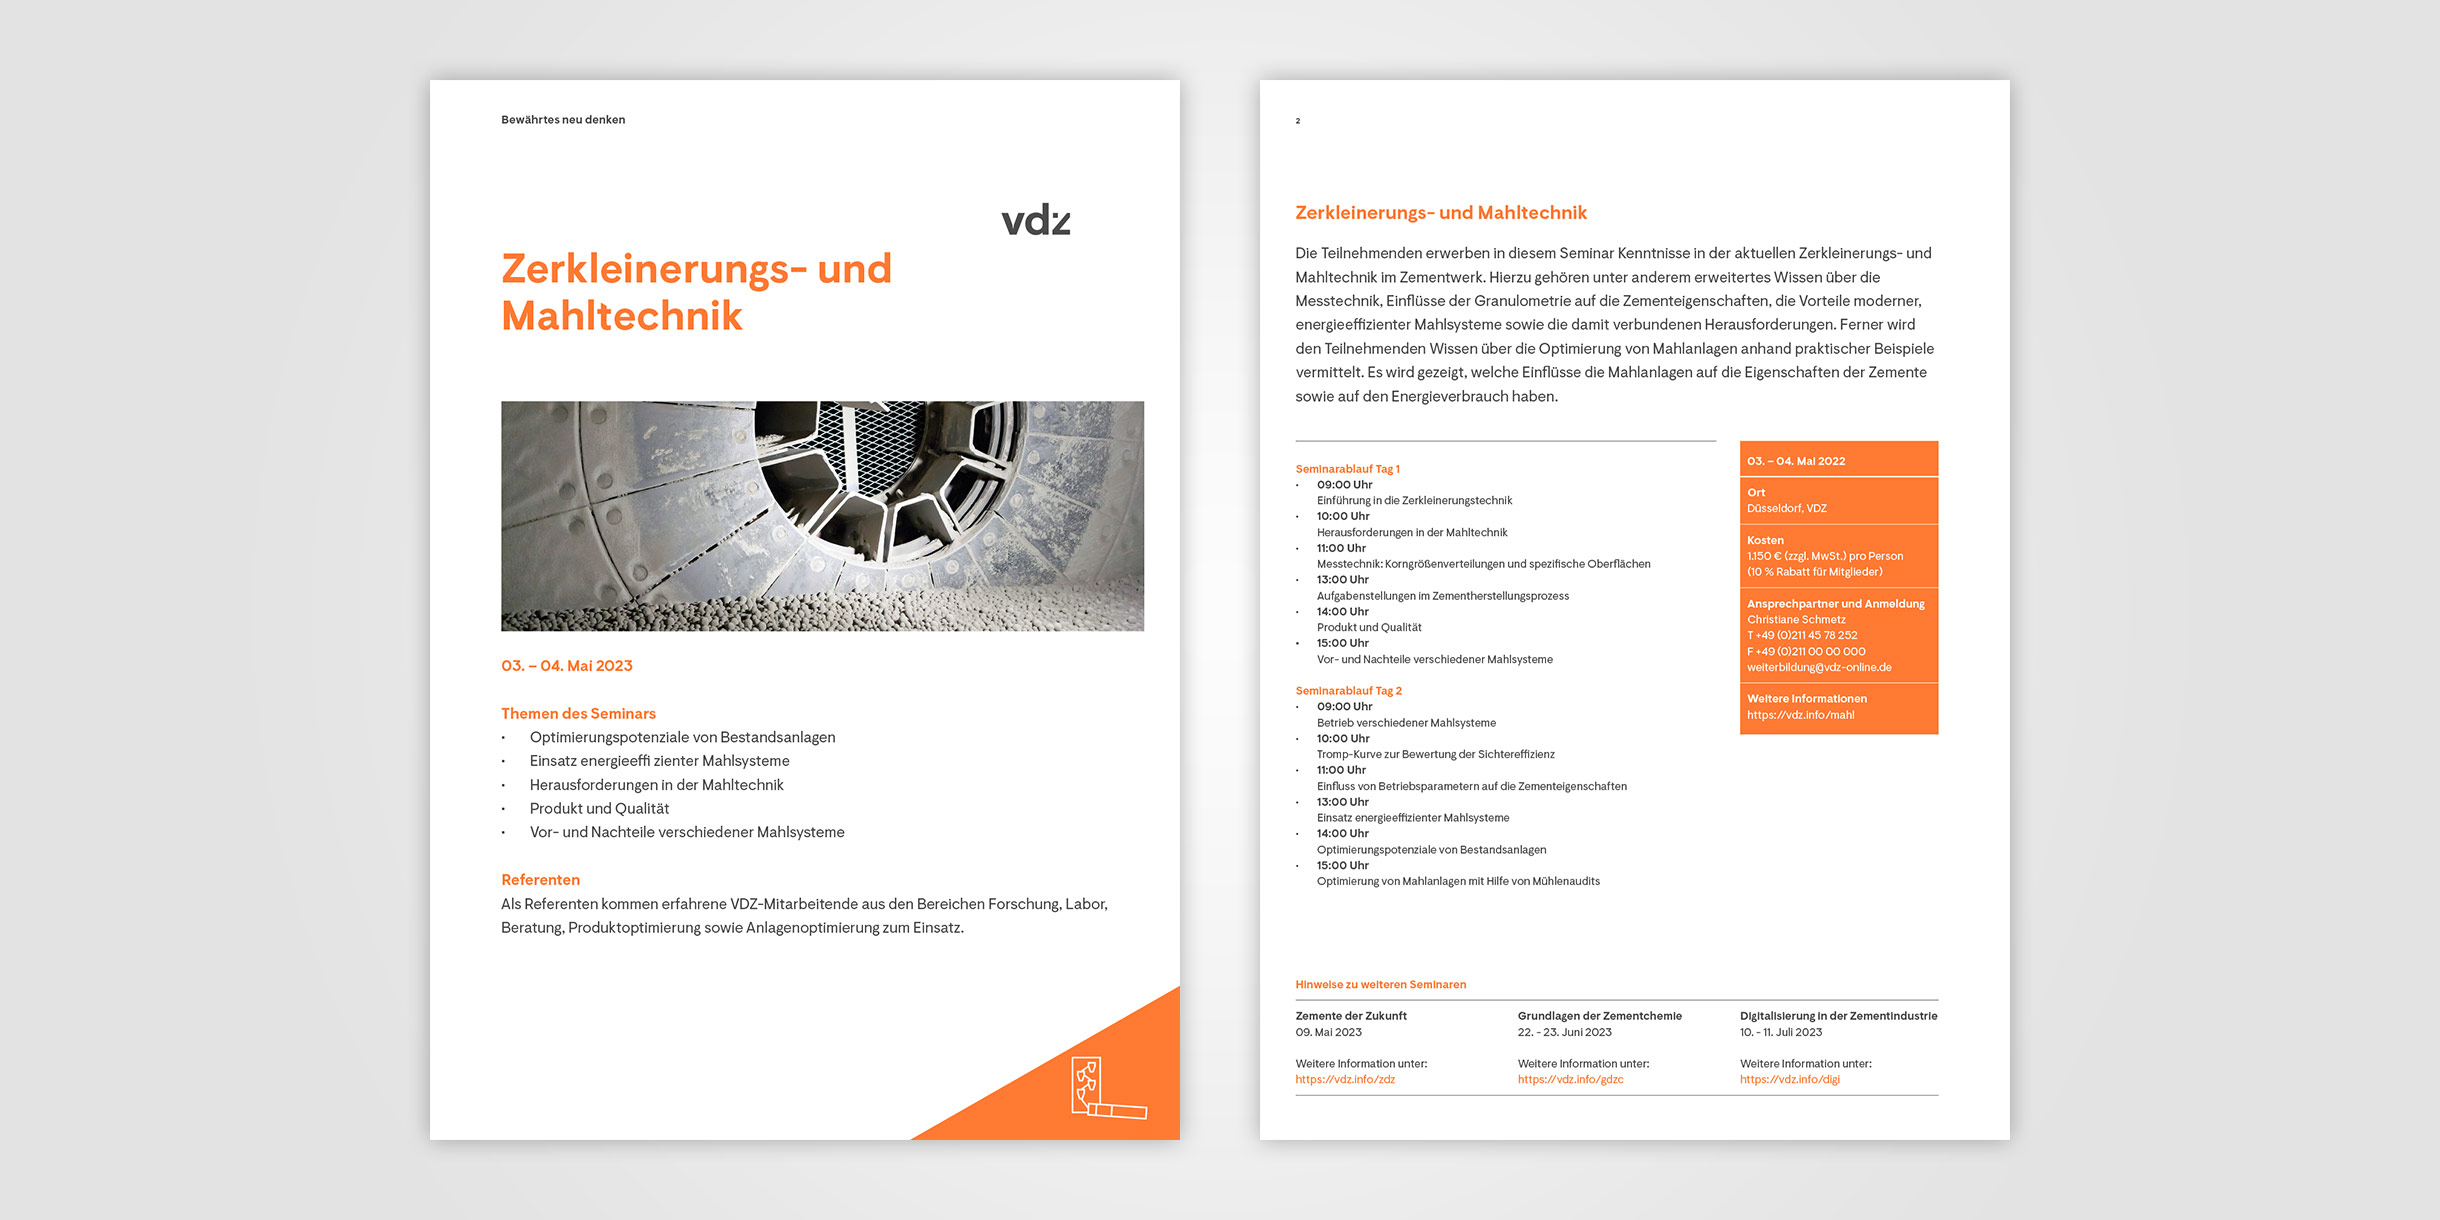 Verein Deutscher Zementwerke (VDZ) - Seminarflyer